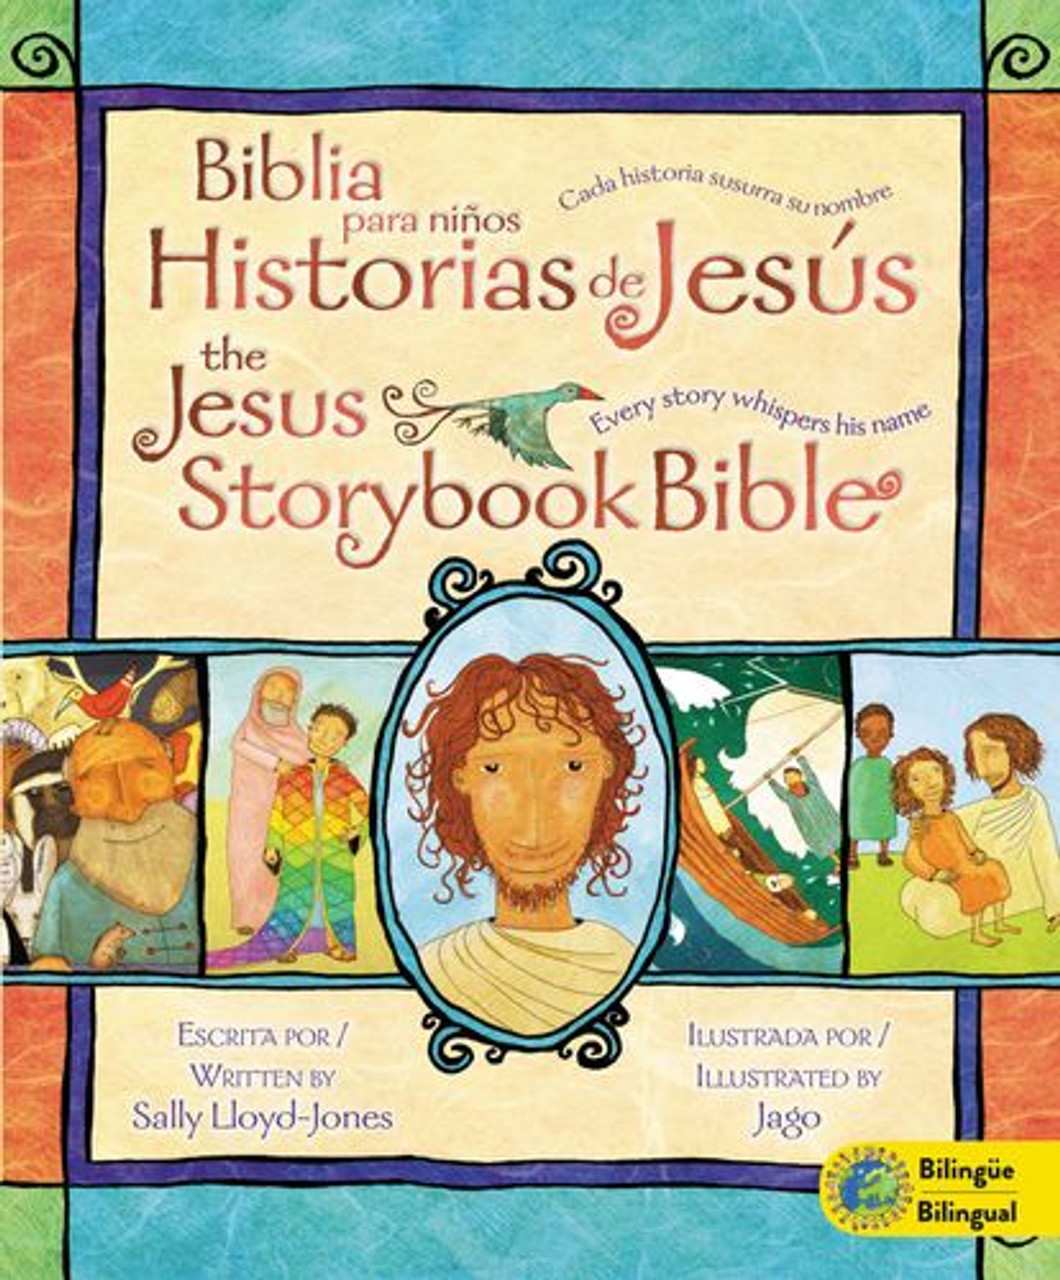 Jesus Storybook Bible (Bilingual) / Biblia para niños, Historias de Jesús  (Bilingüe) - Episcopal Shoppe